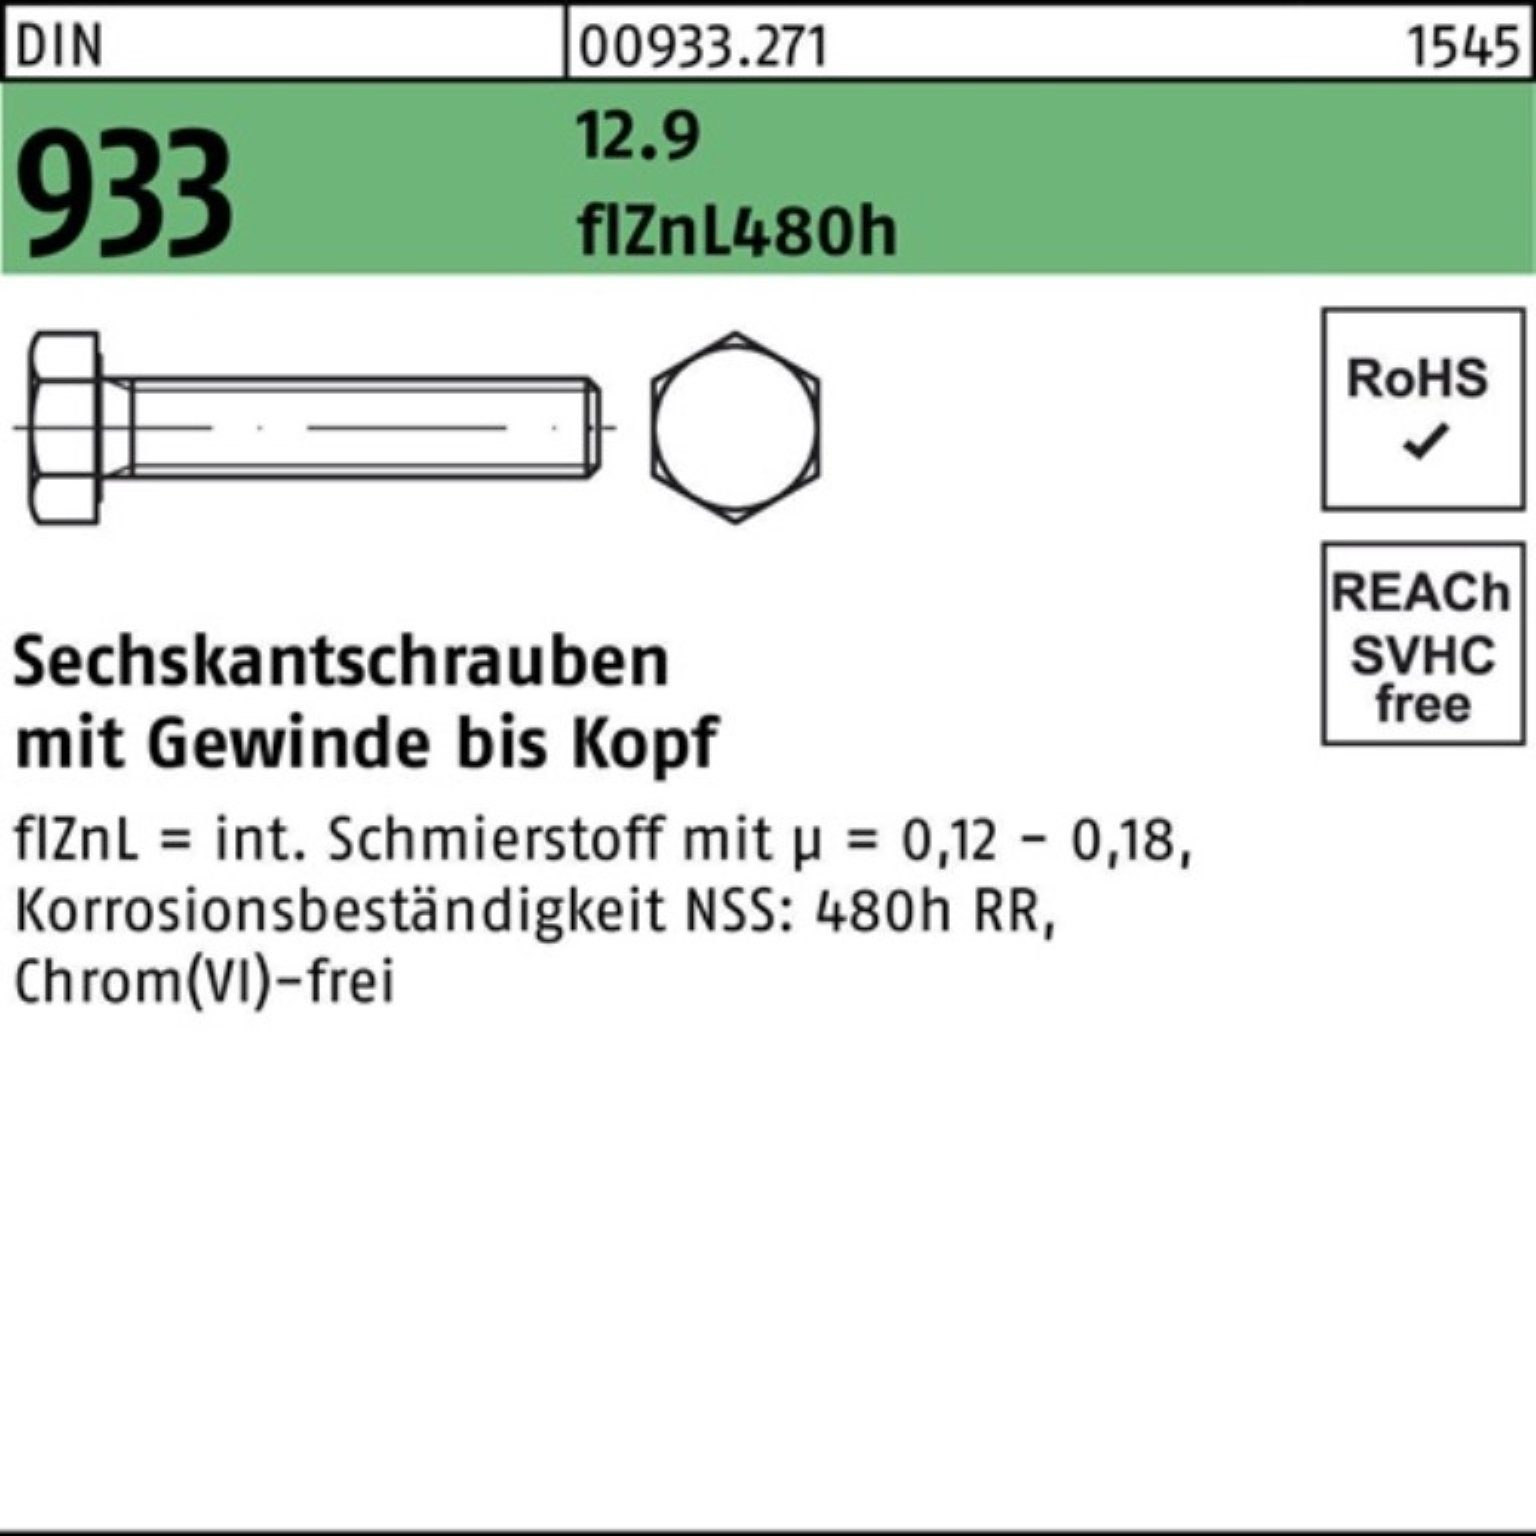 Reyher Sechskantschraube 200er Pack Sechskantschraube DIN 933 VG M8x 40 12.9 flZnL 480h zinklam